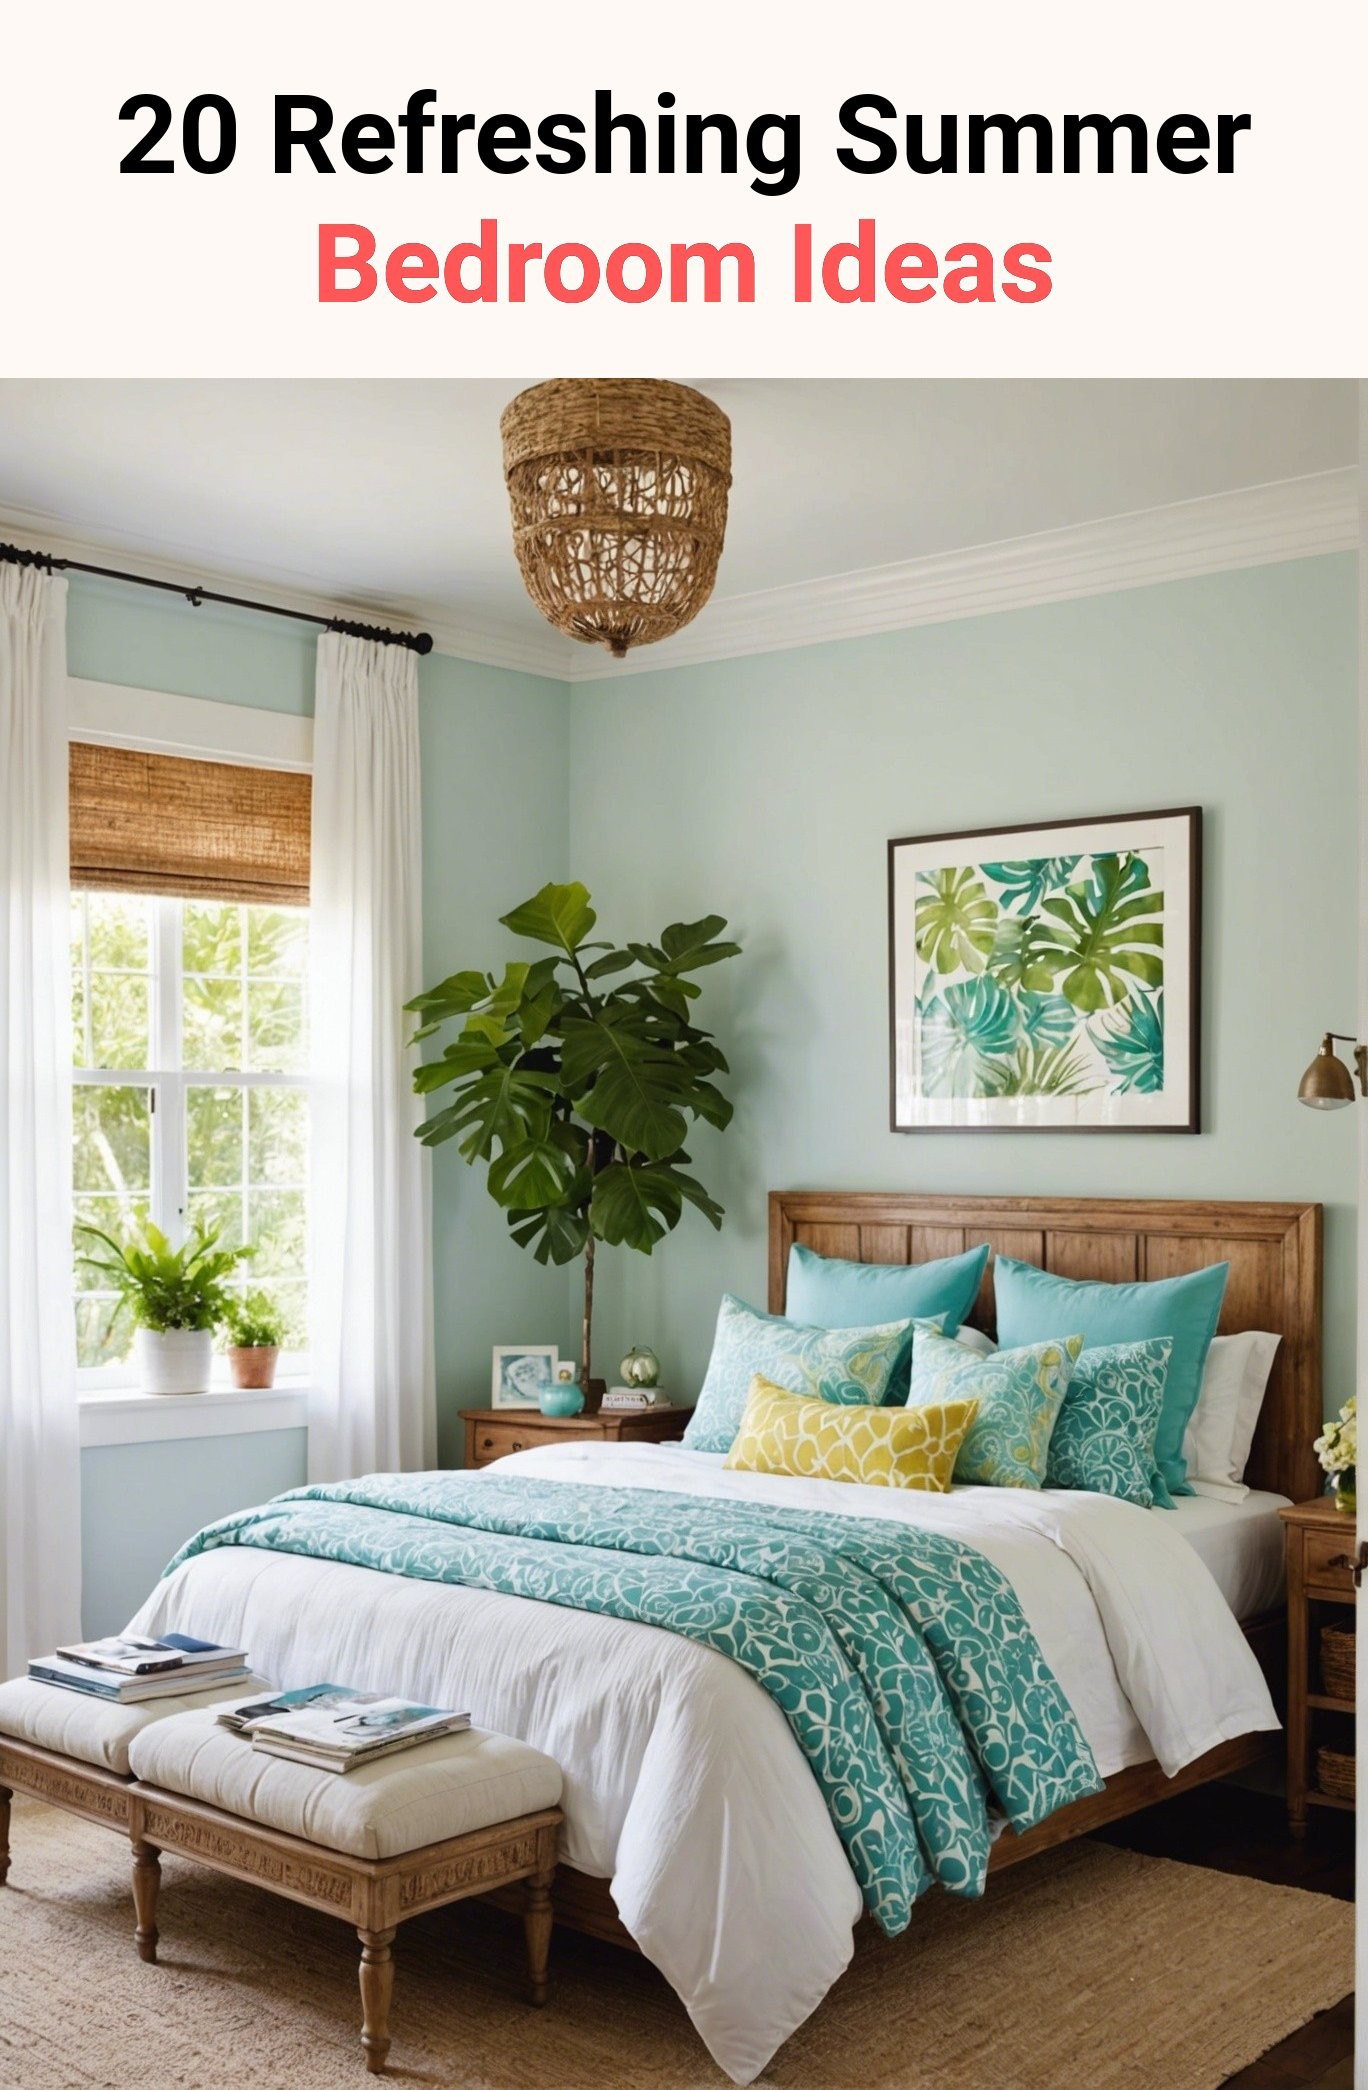 20 Refreshing Summer Bedroom Ideas